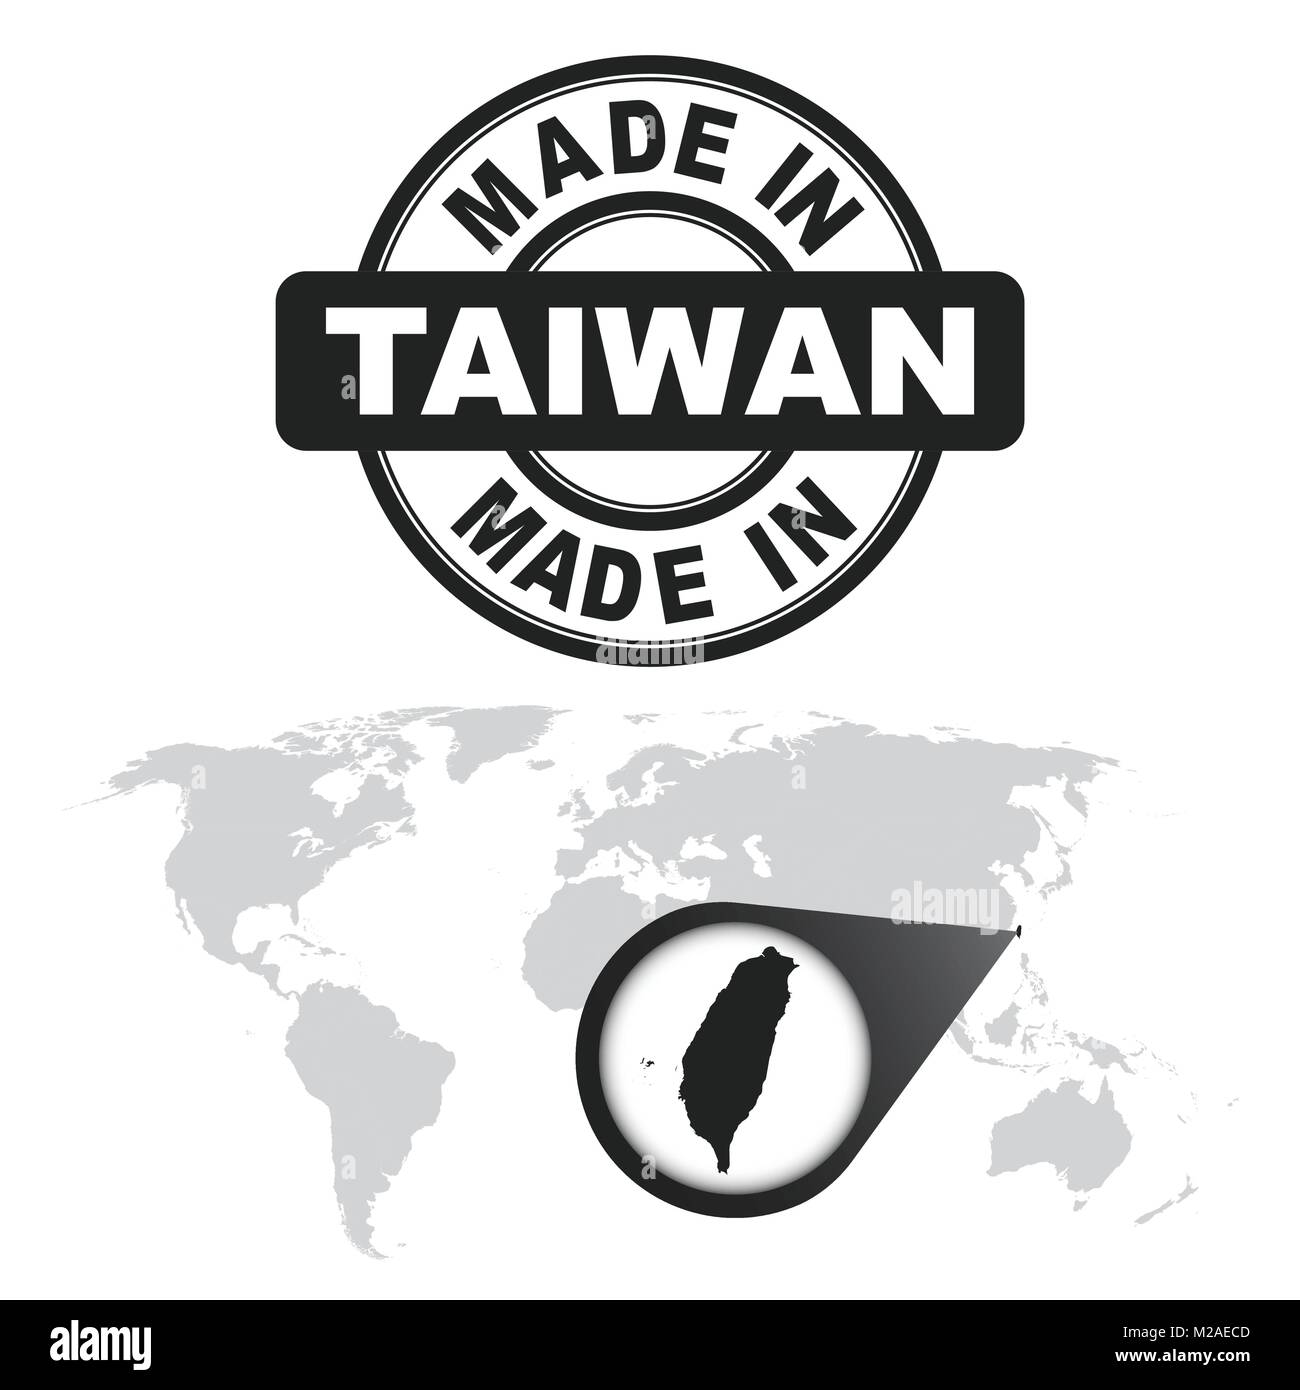 In Taiwan Stempel gemacht. Welt Karte mit Zoom auf Land. Vektor Emblem im flachen Stil auf weißem Hintergrund. Stock Vektor